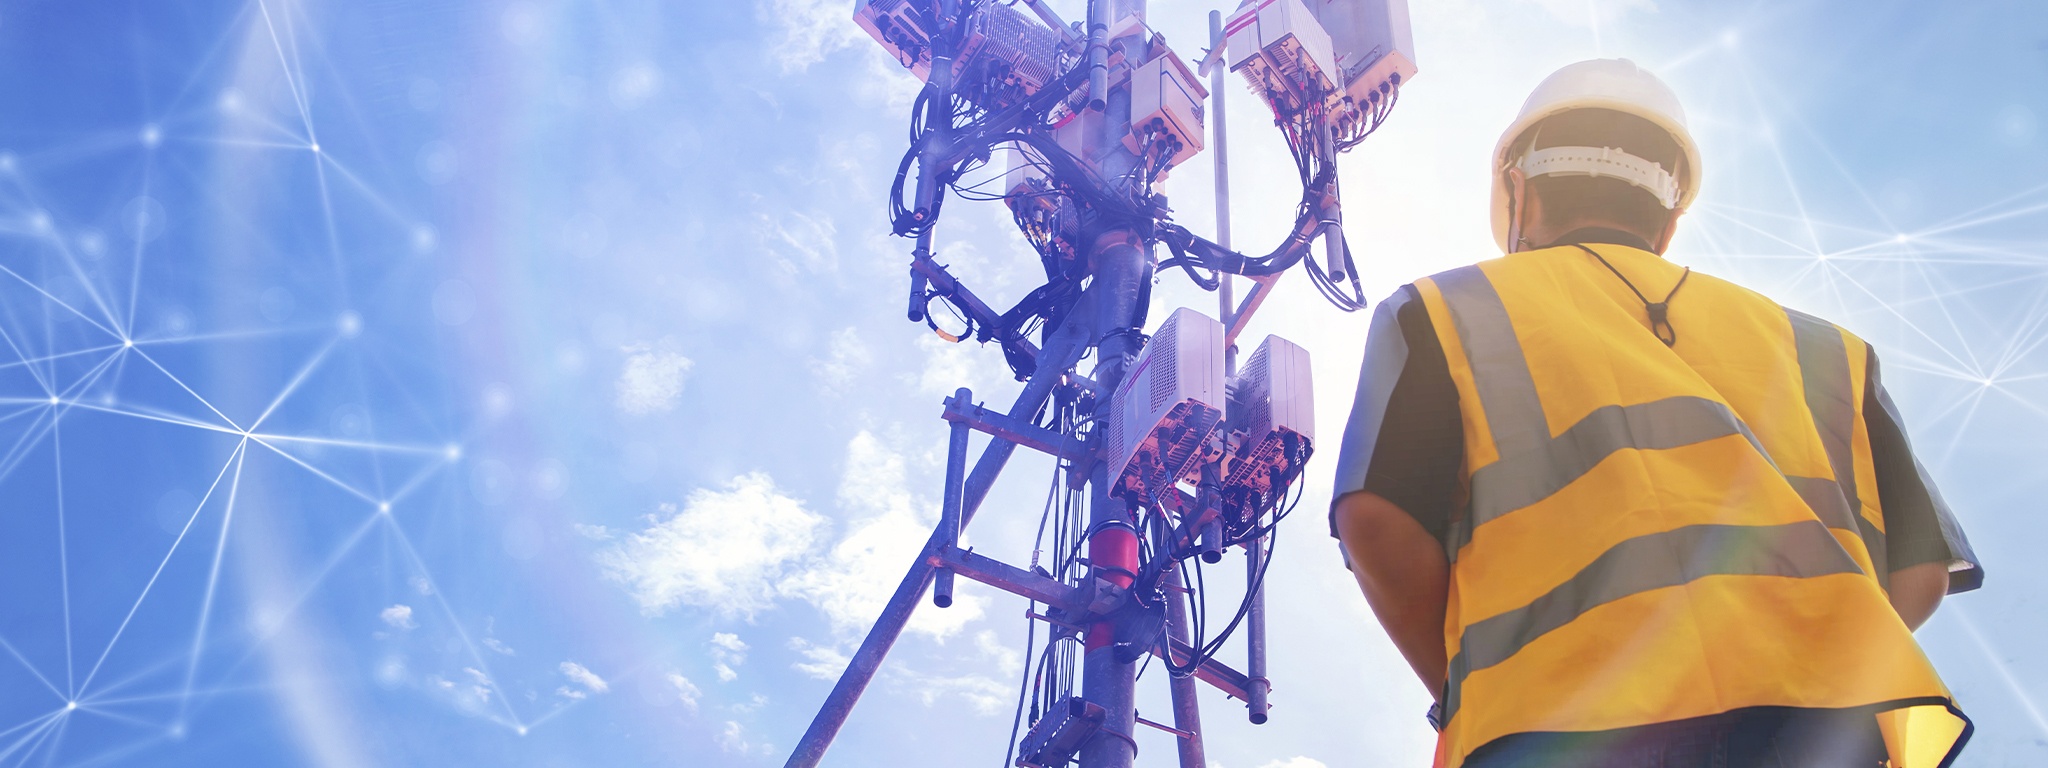 vista posterior de un técnico con casco, trabajando sobre el terreno con una torre de telecomunicaciones delante